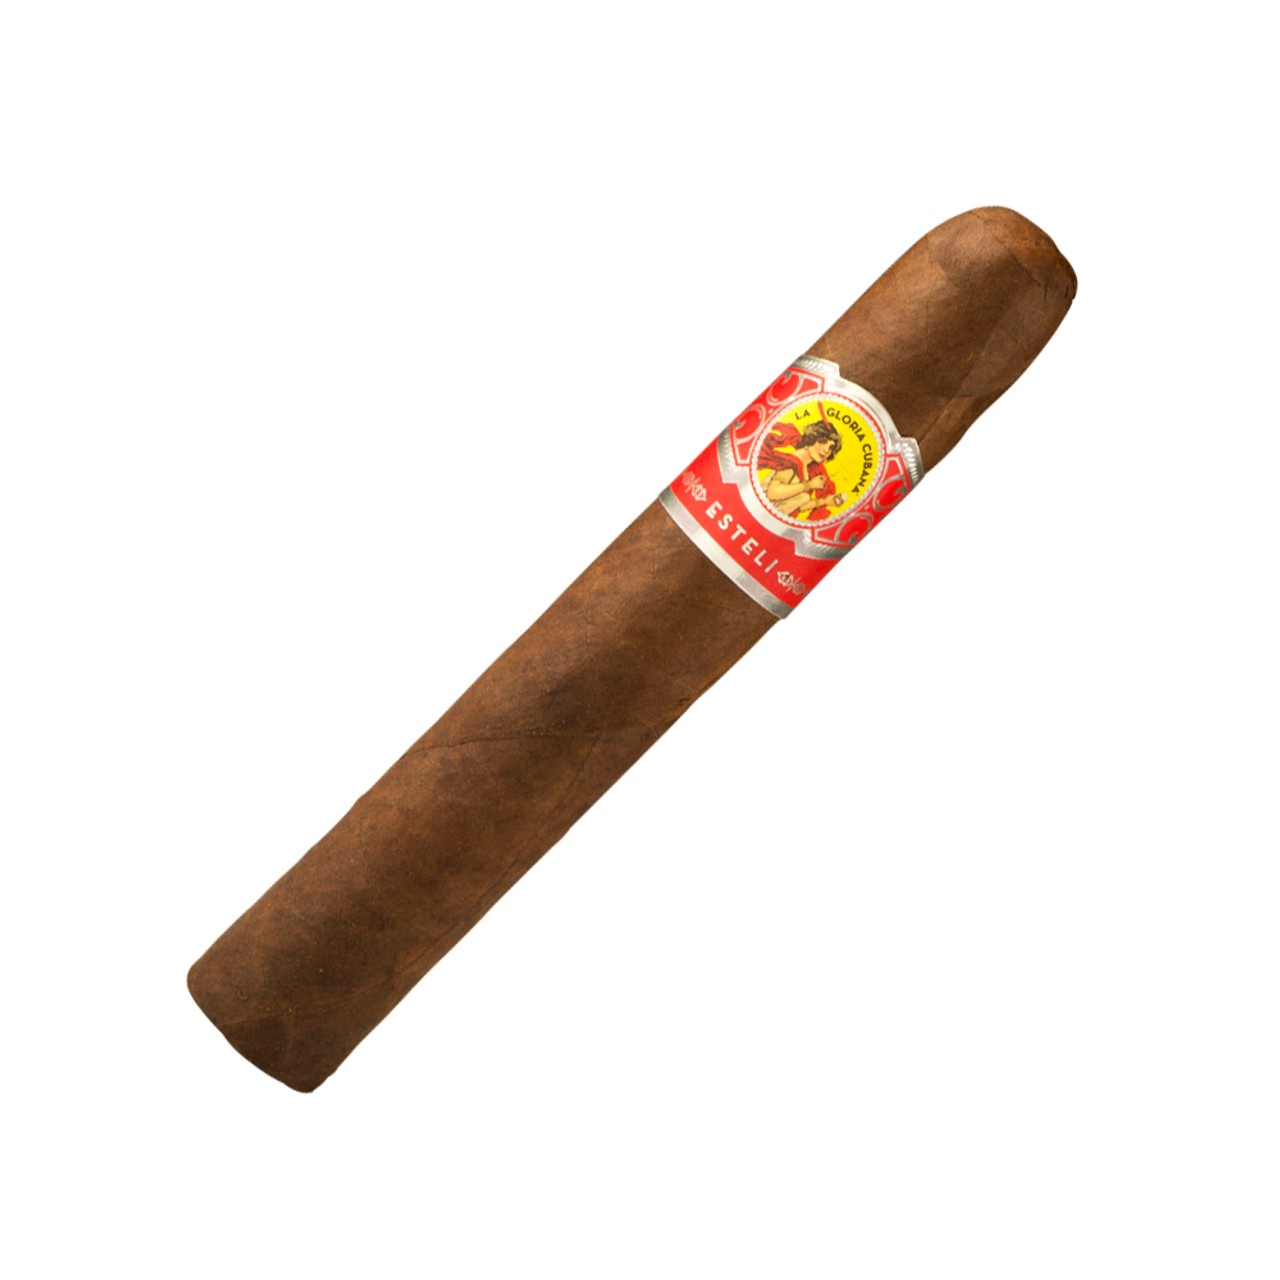 La Gloria Cubana Esteli Gigante Cigars - 6 x 60 Single